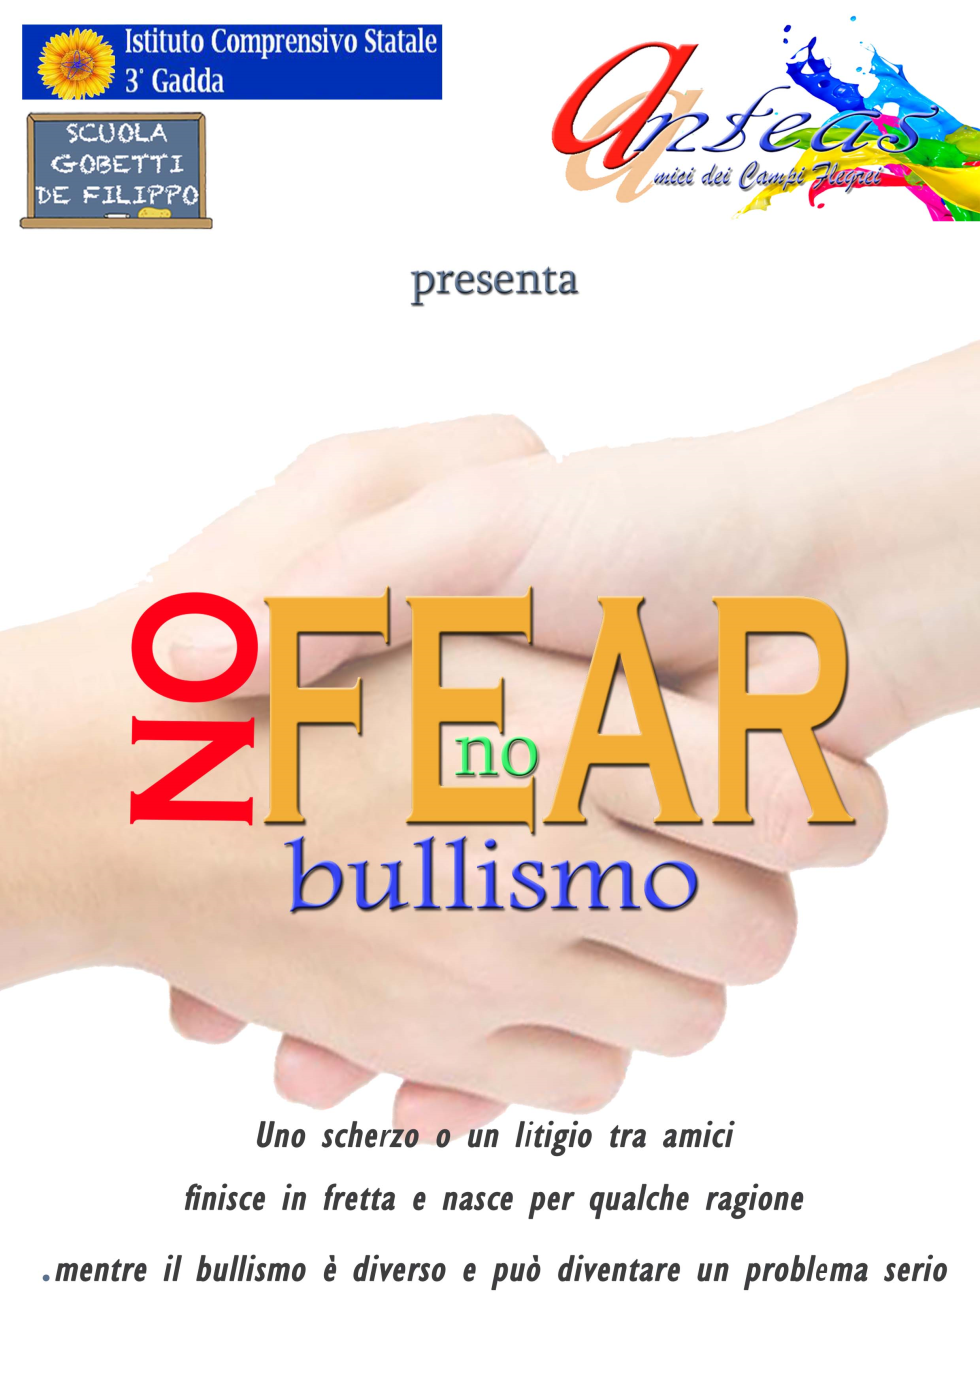 Anteas Amici dei Campi Flegrei presenta un progetto contro il bullismo, nell'ambito del doposcuola con i ragazzi delle scuole primarie